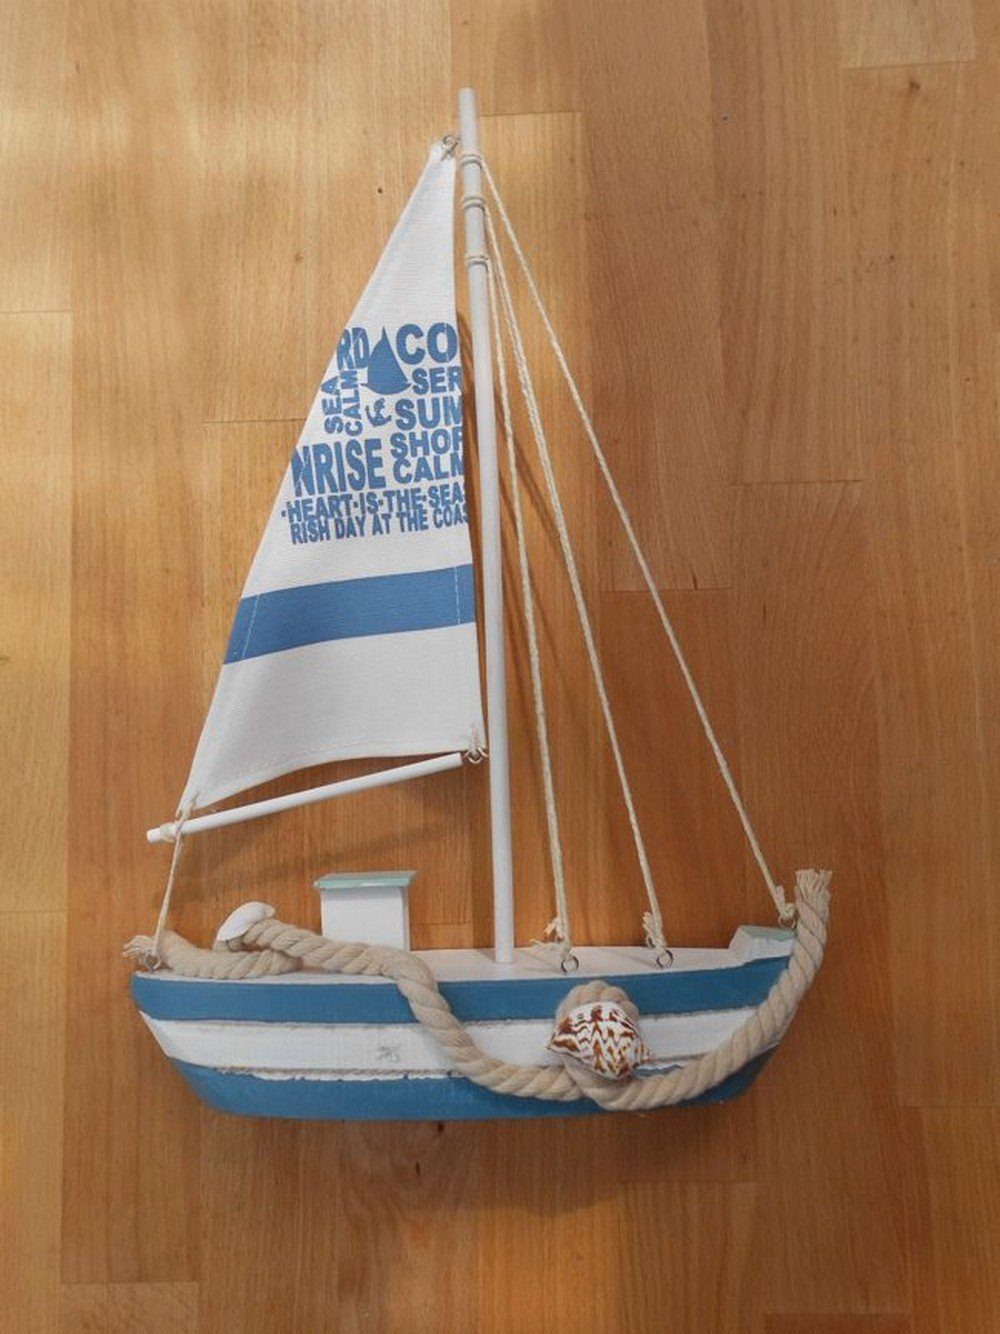 Deko-Impression Dekofigur Segelschiff mit Takelage. Maritimes Deko-Objekt Holz blau-weiß (1 St)